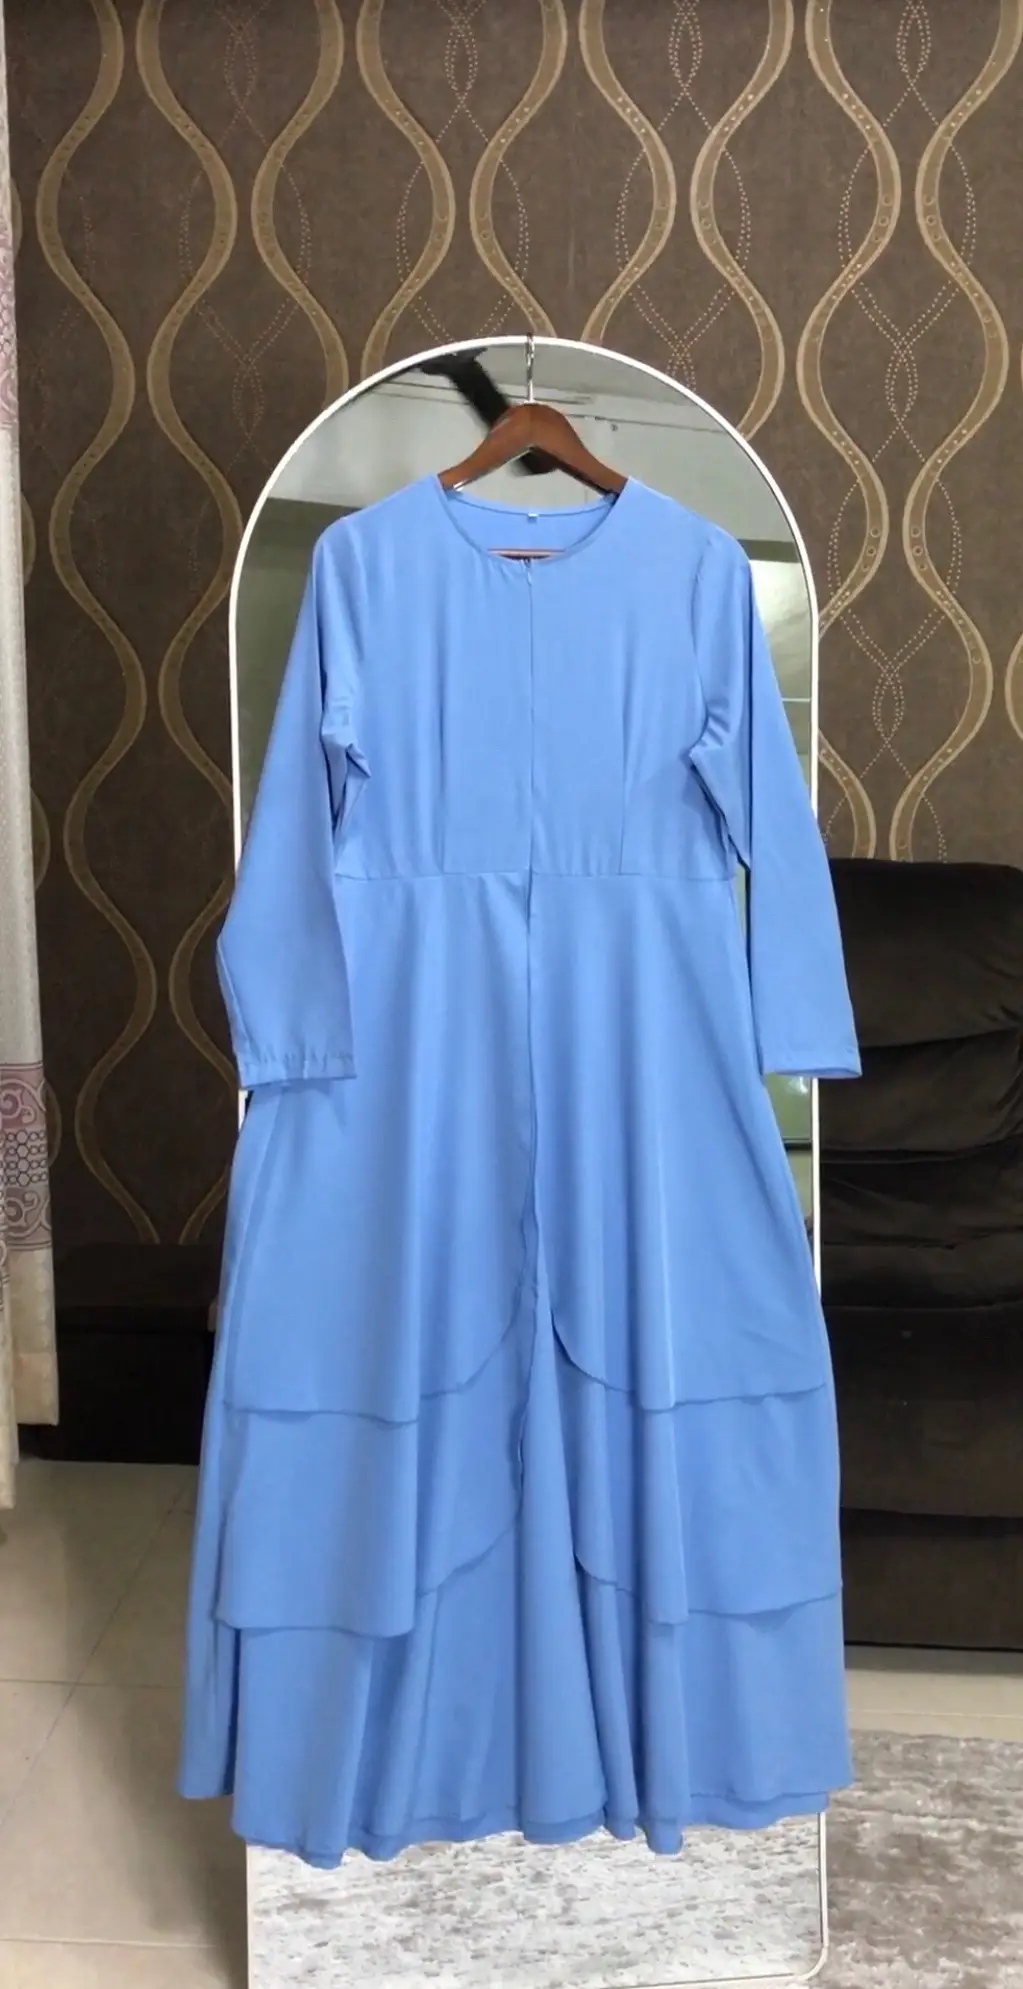 Beli sini @𝔑𝔬𝔞 𝔇𝔦𝔞𝔫 🦢 Dress flowy layers bawah RM50 sesuai untuk events or bridesmaids 🫶🏻 #dress #bridesmaids 